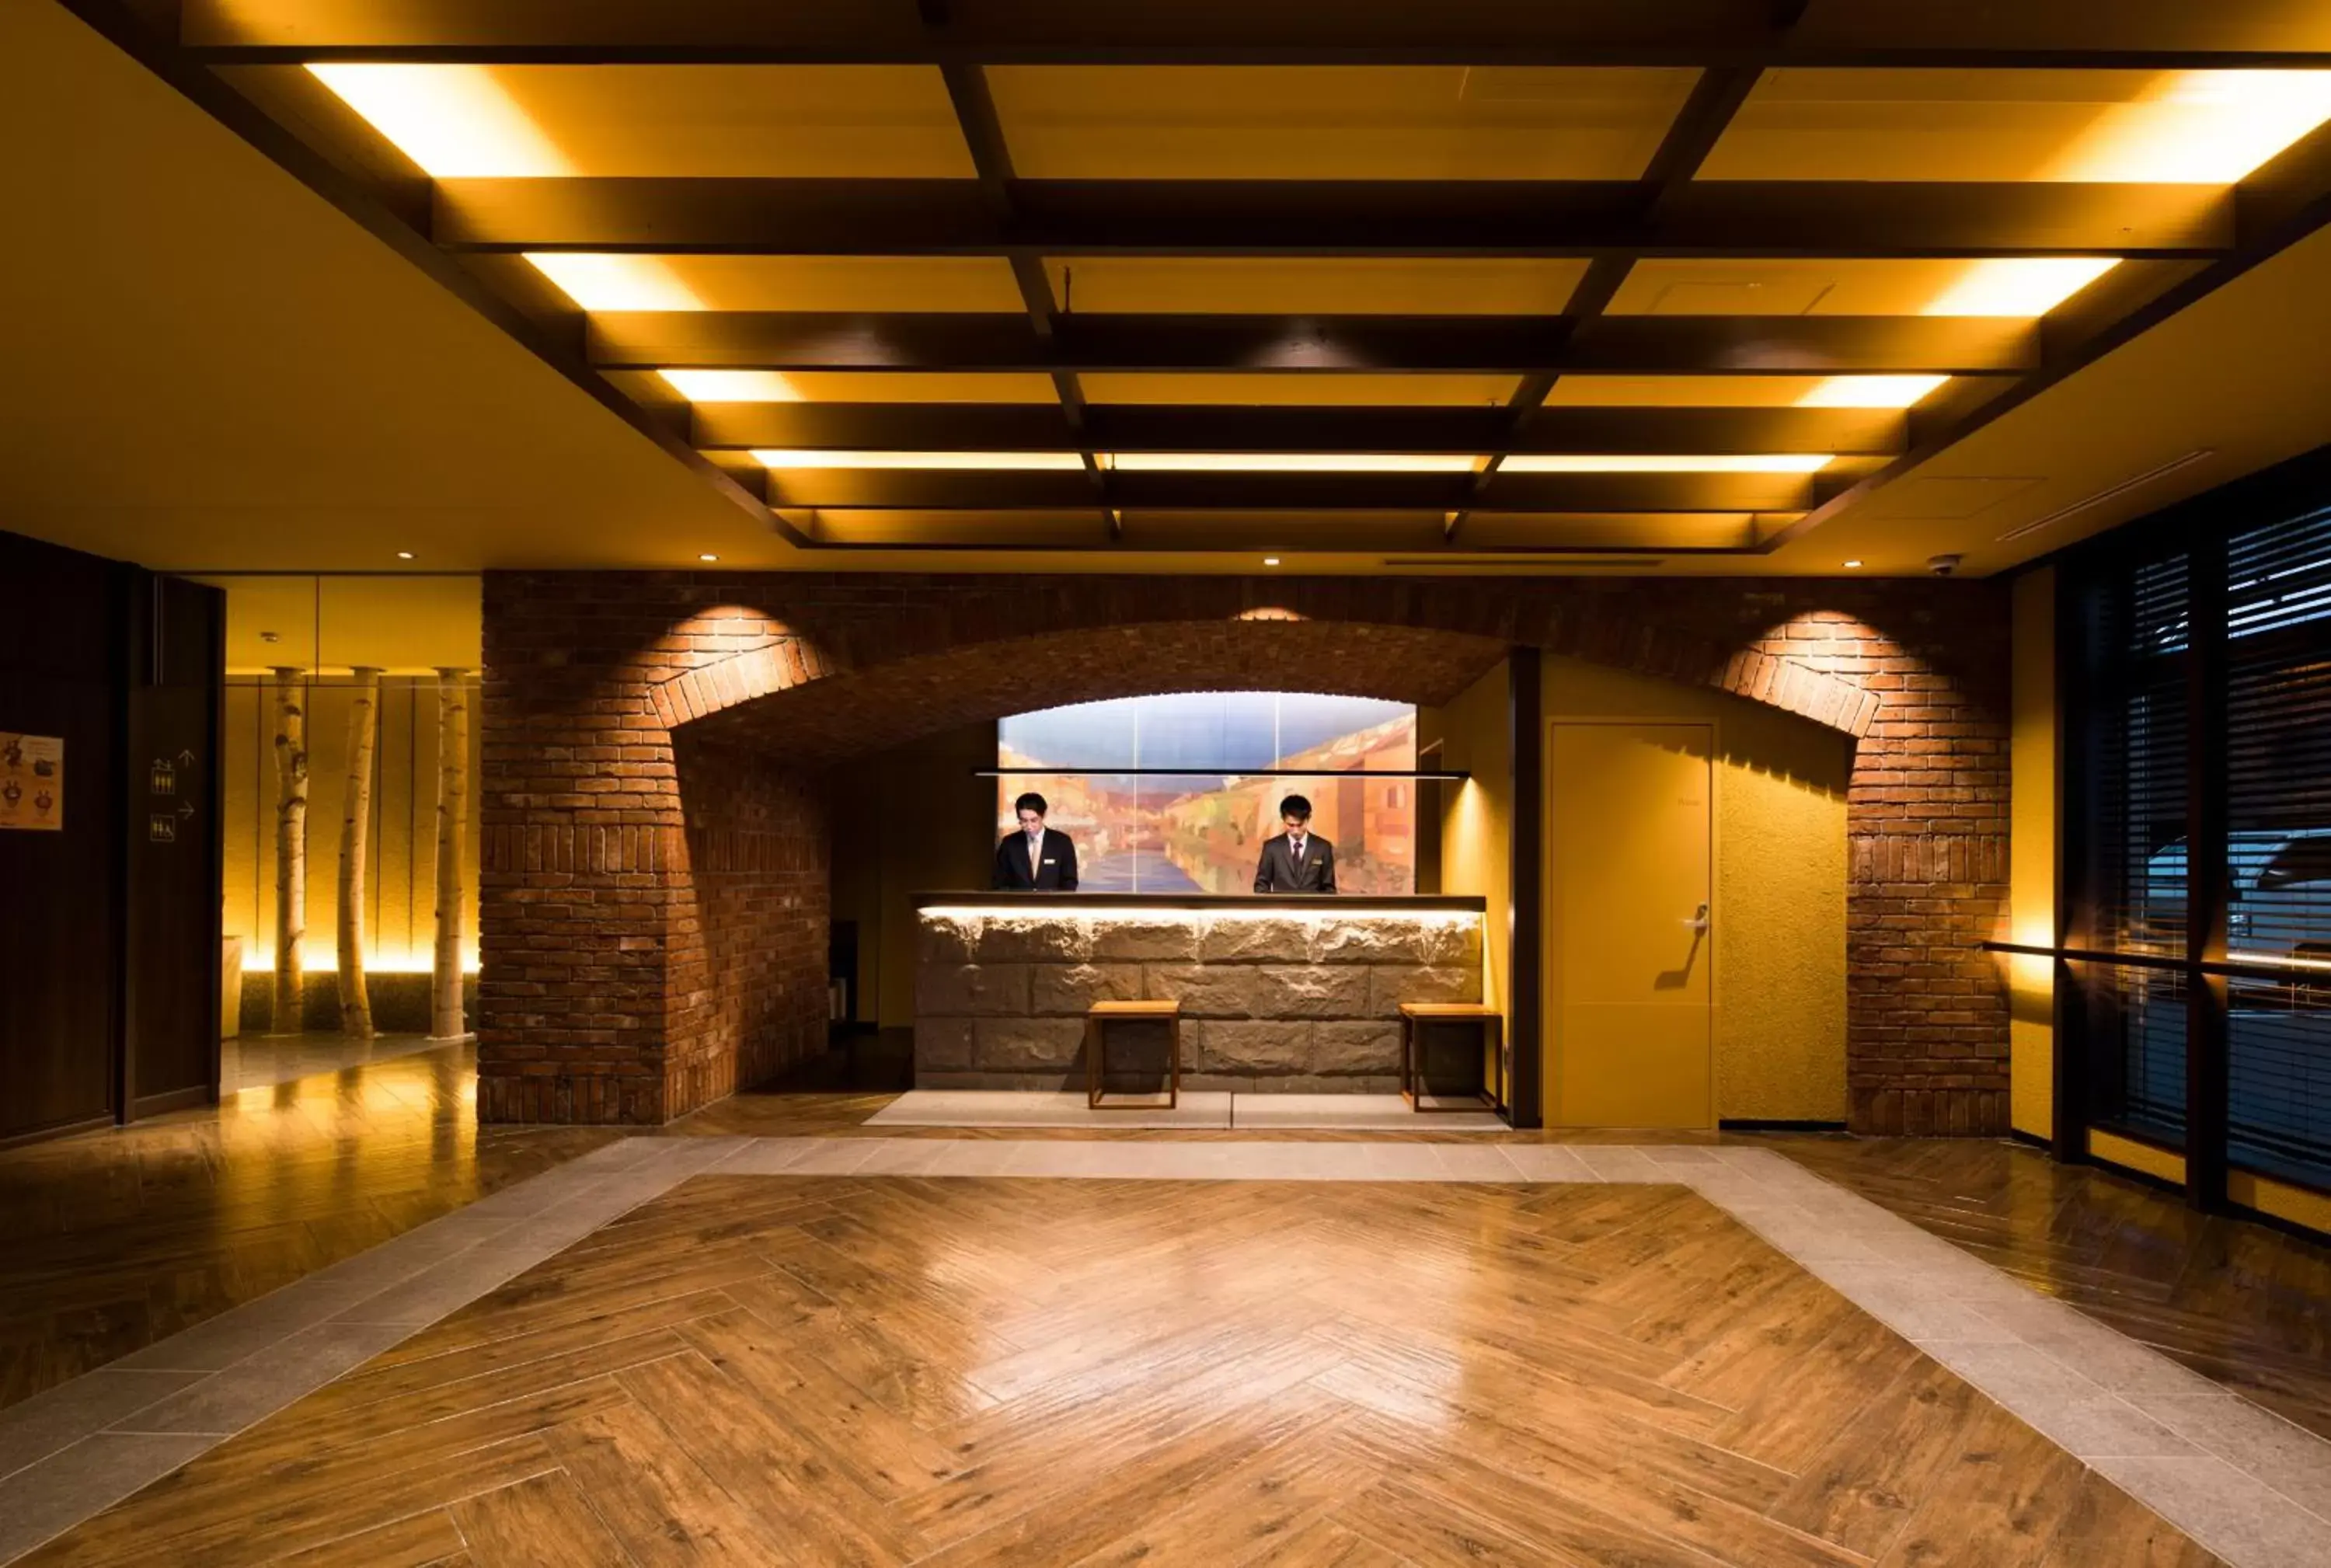 Lobby or reception in Hotel Torifito Otaru Canal